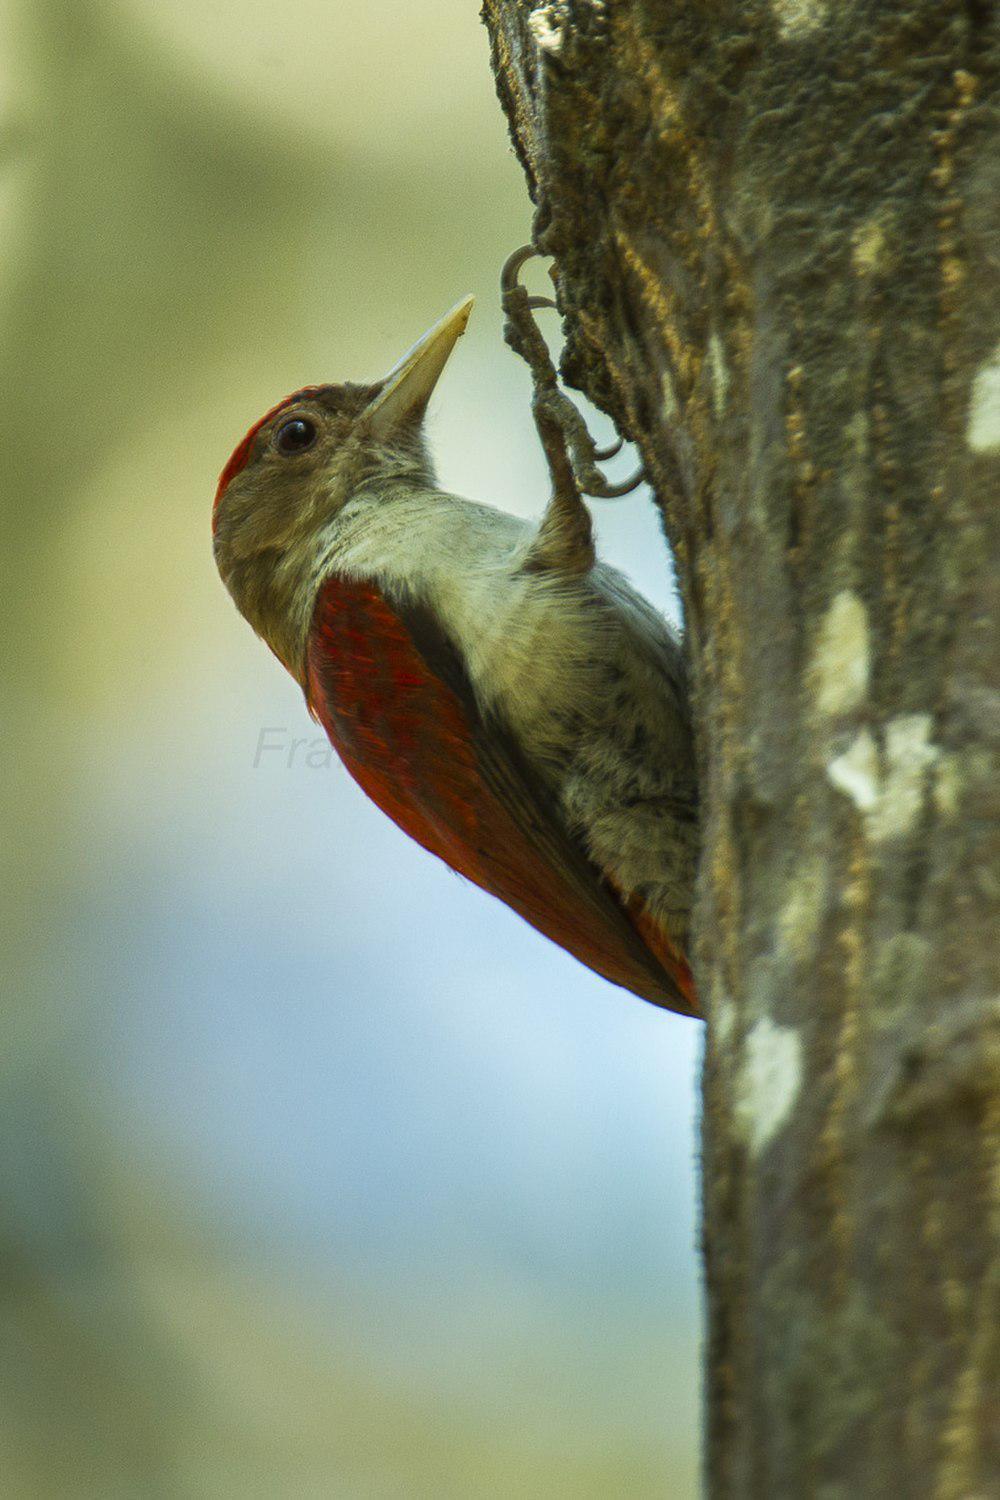 朱背啄木鸟 / Scarlet-backed Woodpecker / Veniliornis callonotus